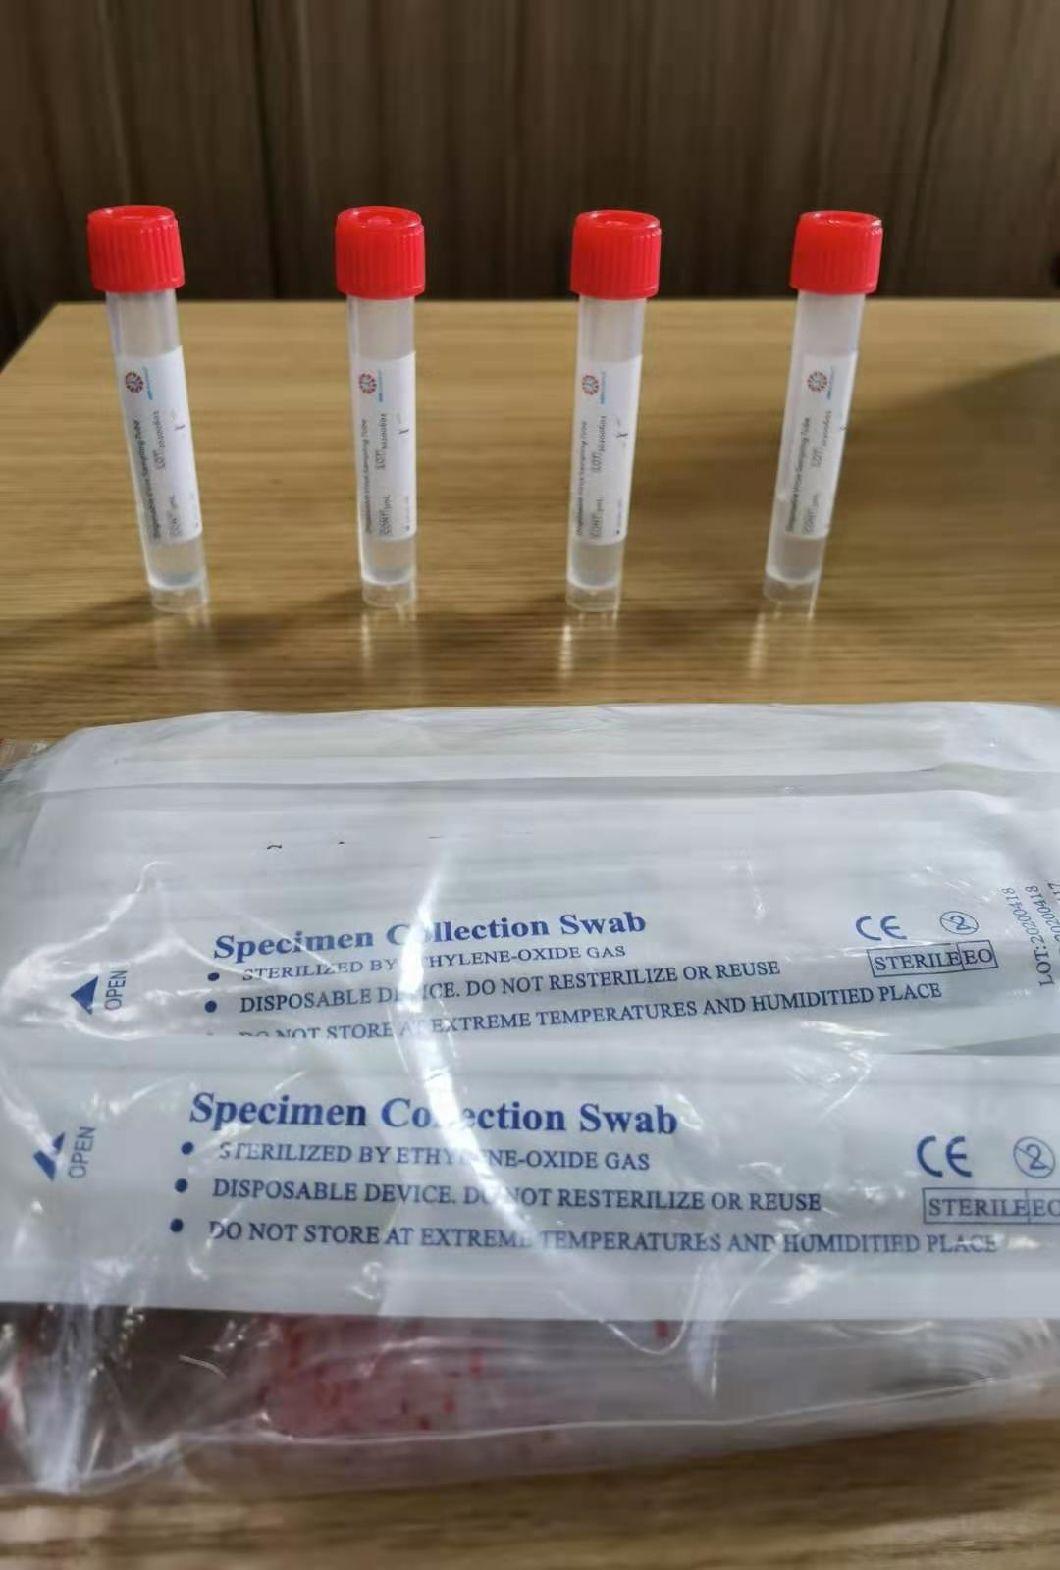 Approved Viral Transport Medium Vtm Sample Tube Bottle Disposable Virus Sampling Tube